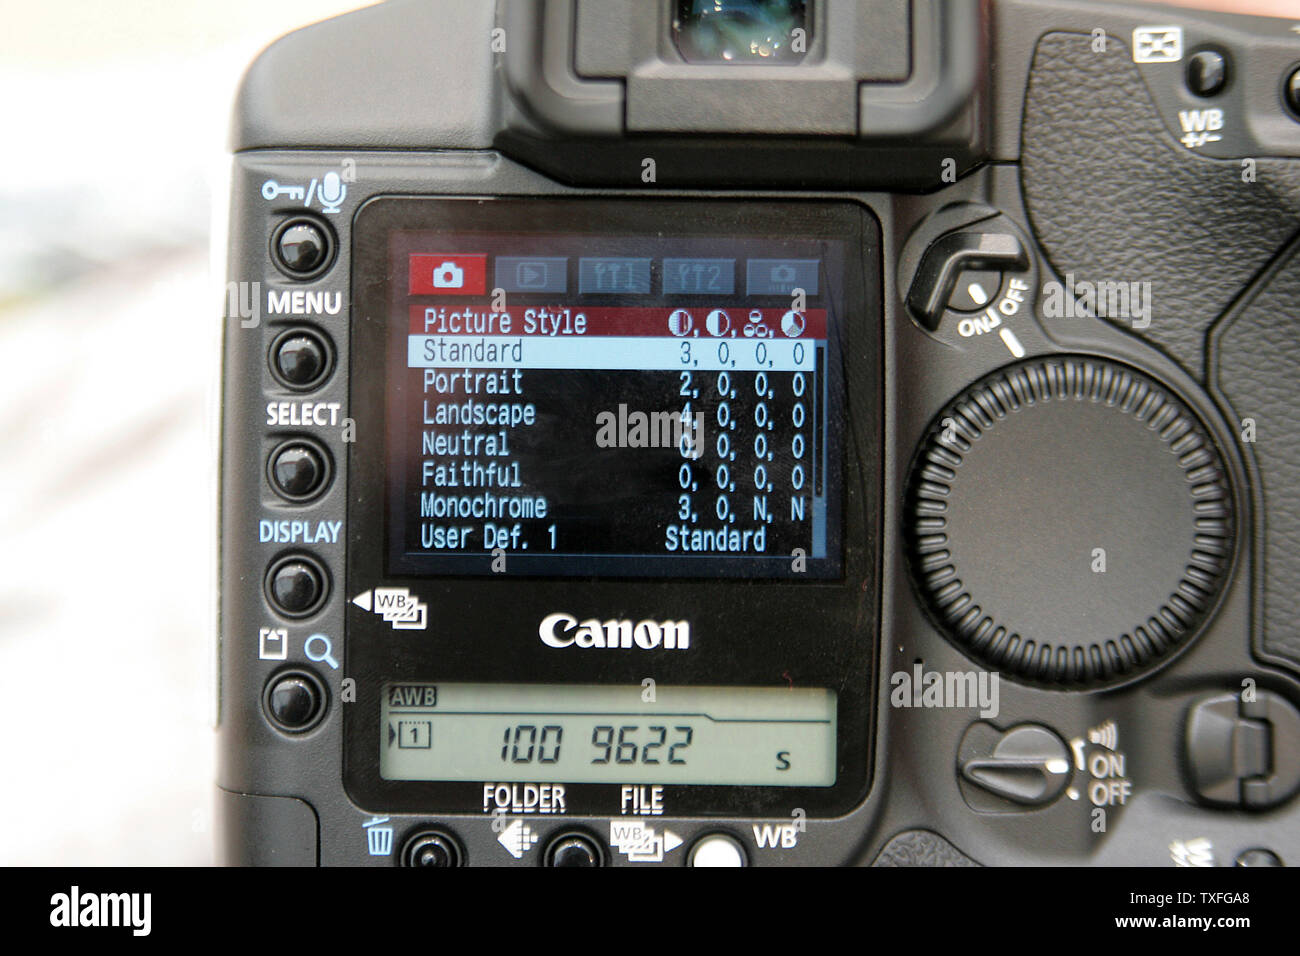 Canon présente le plus récent numérique professionnel EOS 1D Mark II  N'appareil photo modèle lors de l'IFA 2005 Monde de l'électronique grand  public à Berlin, Allemagne, le 6 septembre 2005. 2005 successeur